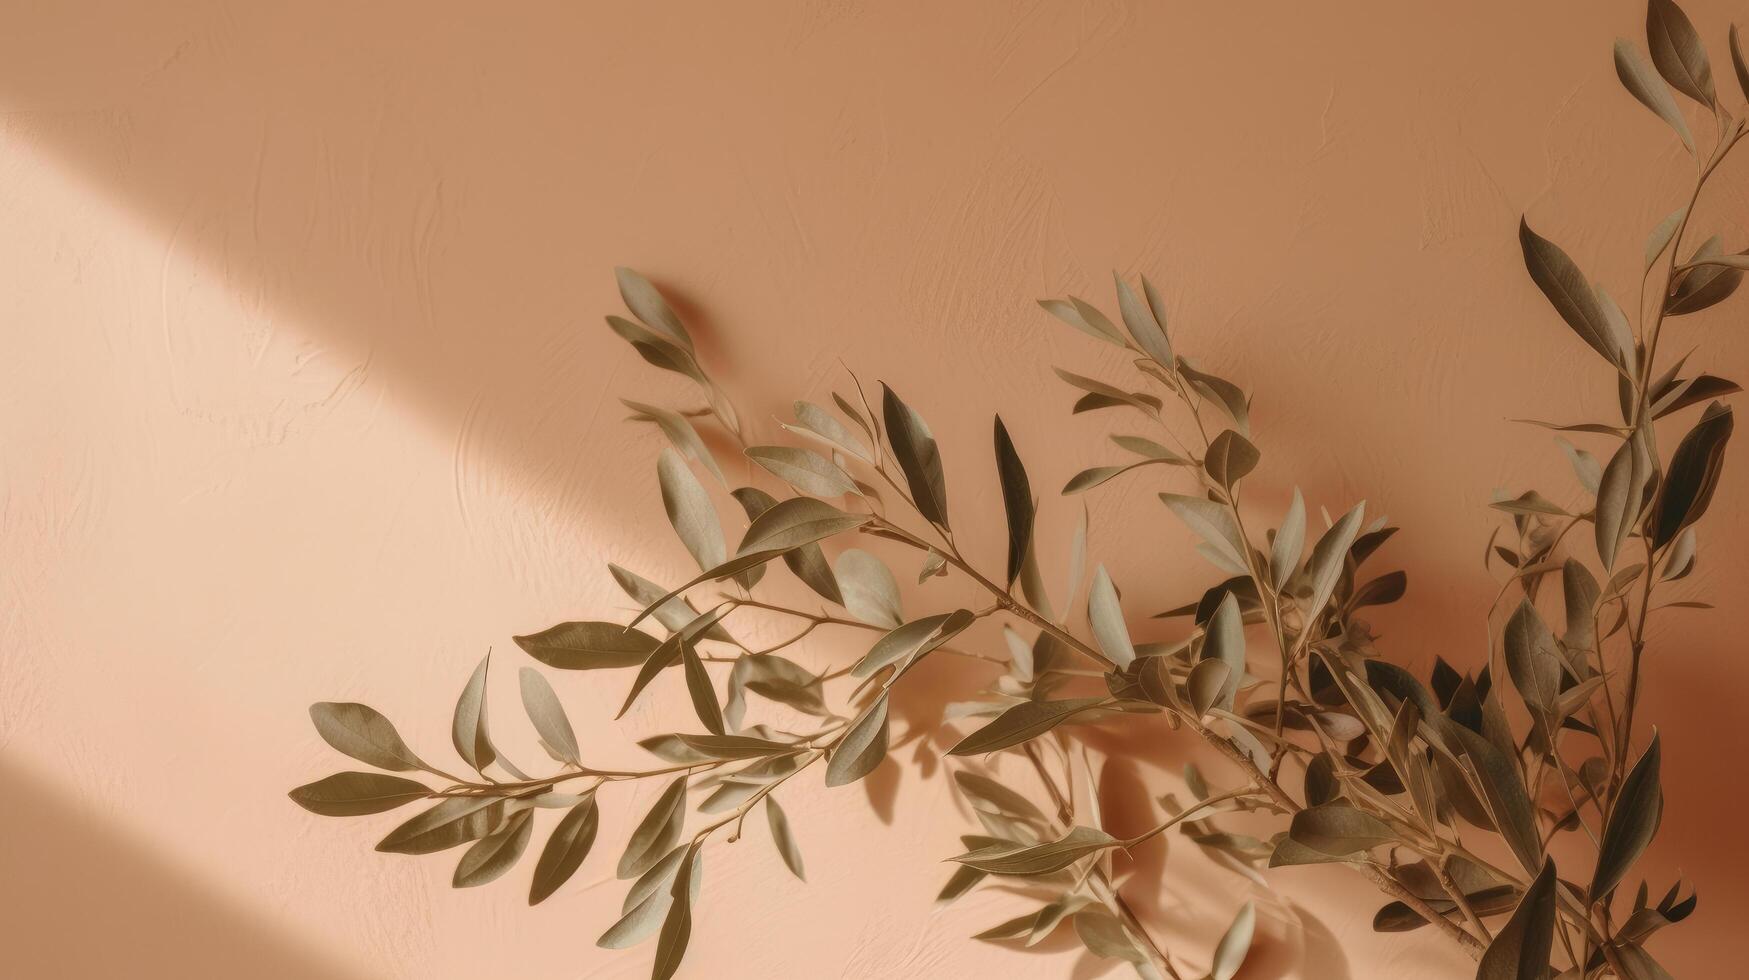 Olive branch leaves on beige background. Illustration photo